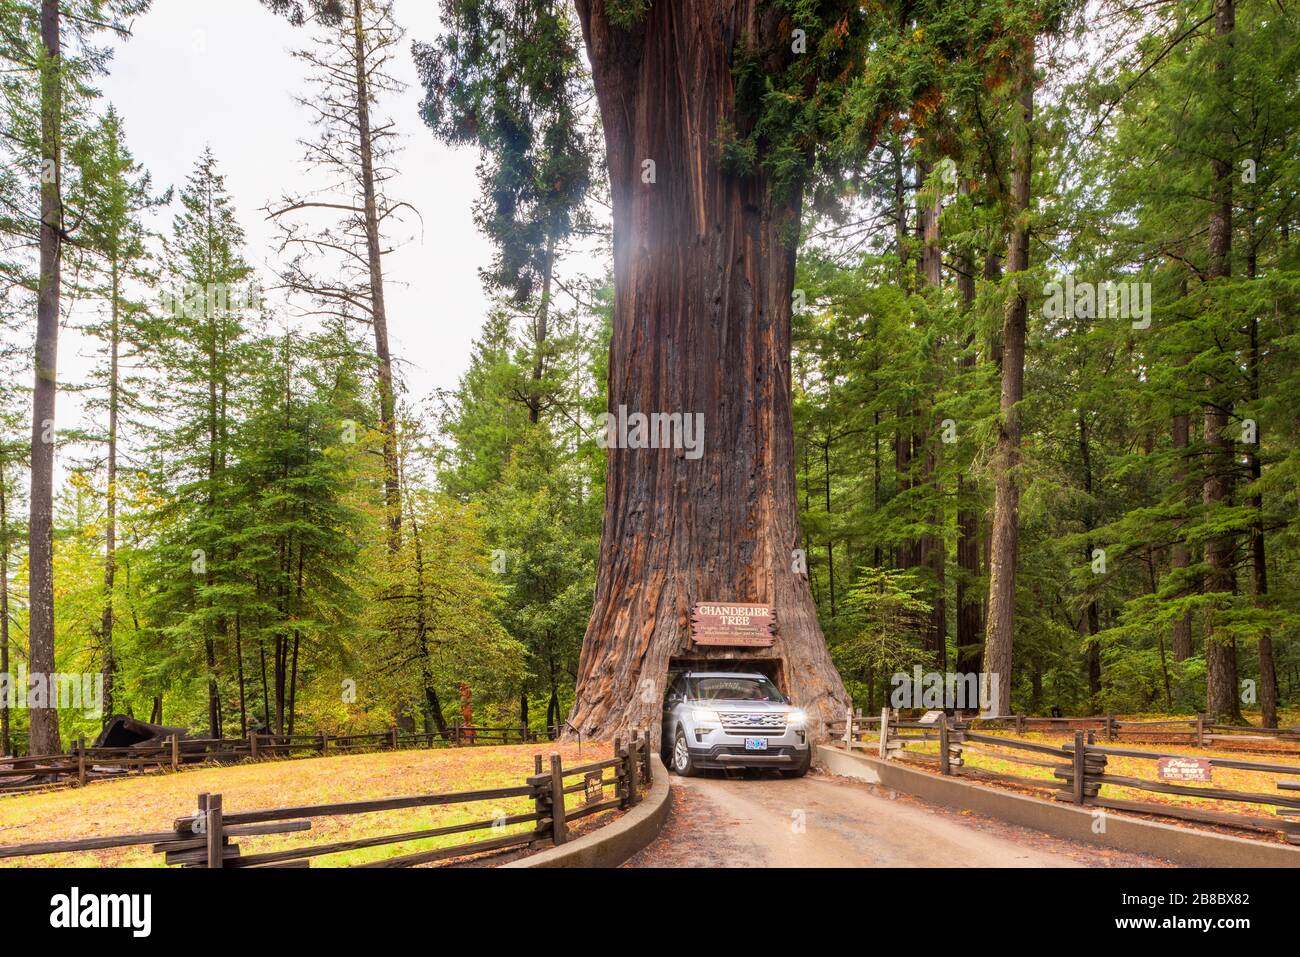 Chandelier Drive à travers l'arbre à Leggett Californie États-Unis Banque D'Images